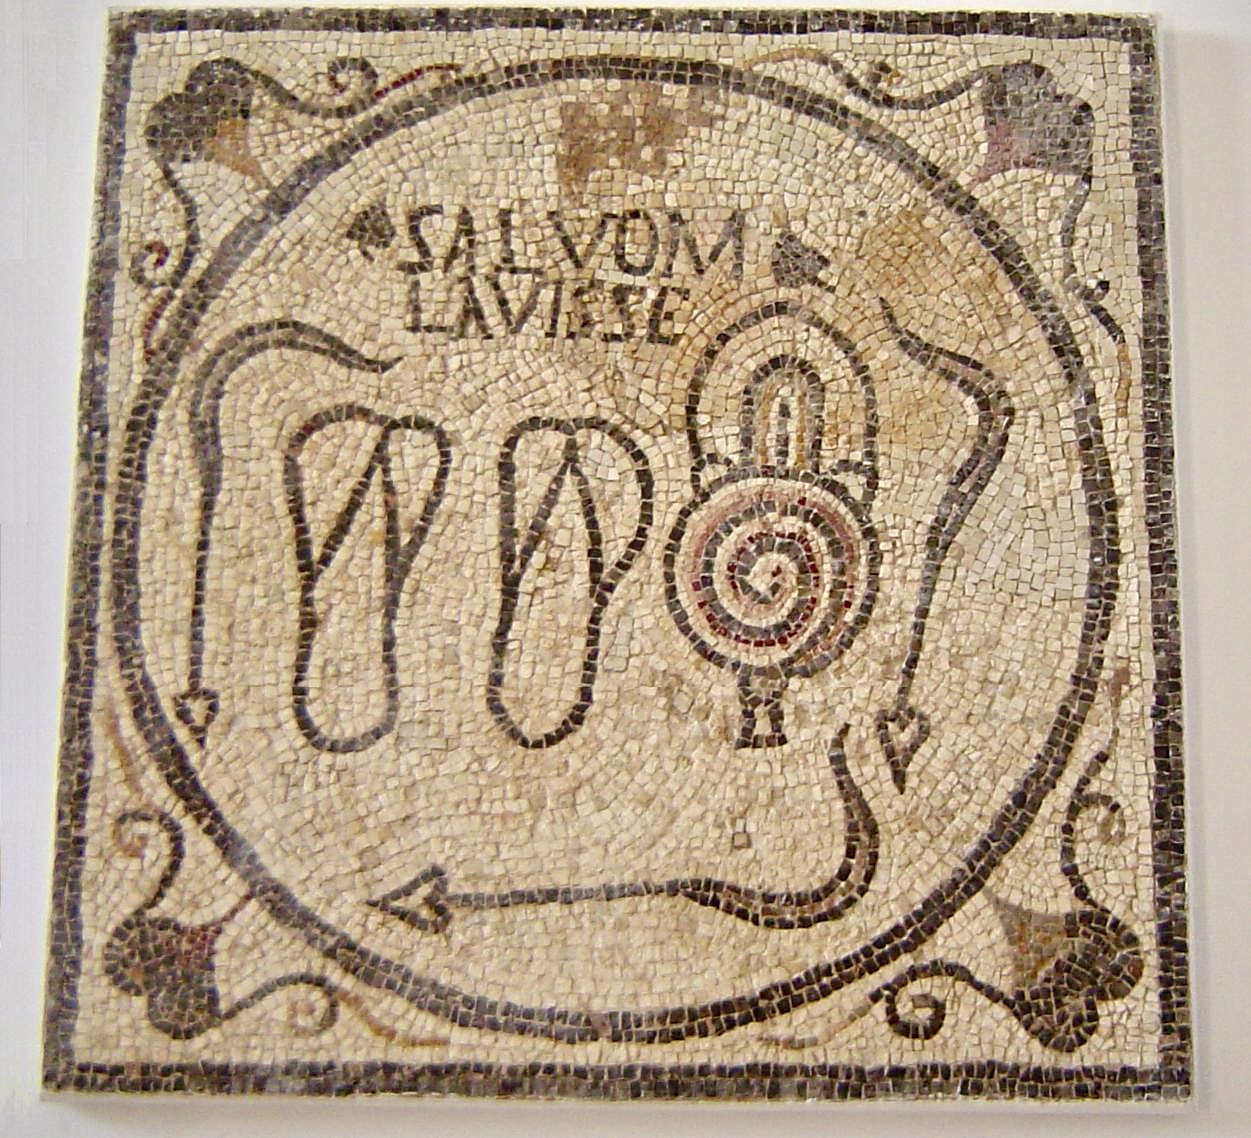 Mosaïque des bains de Sabratha, en Libye. L'inscription Salvom Lavisse peut se traduire par « se laver est bénéfique ».